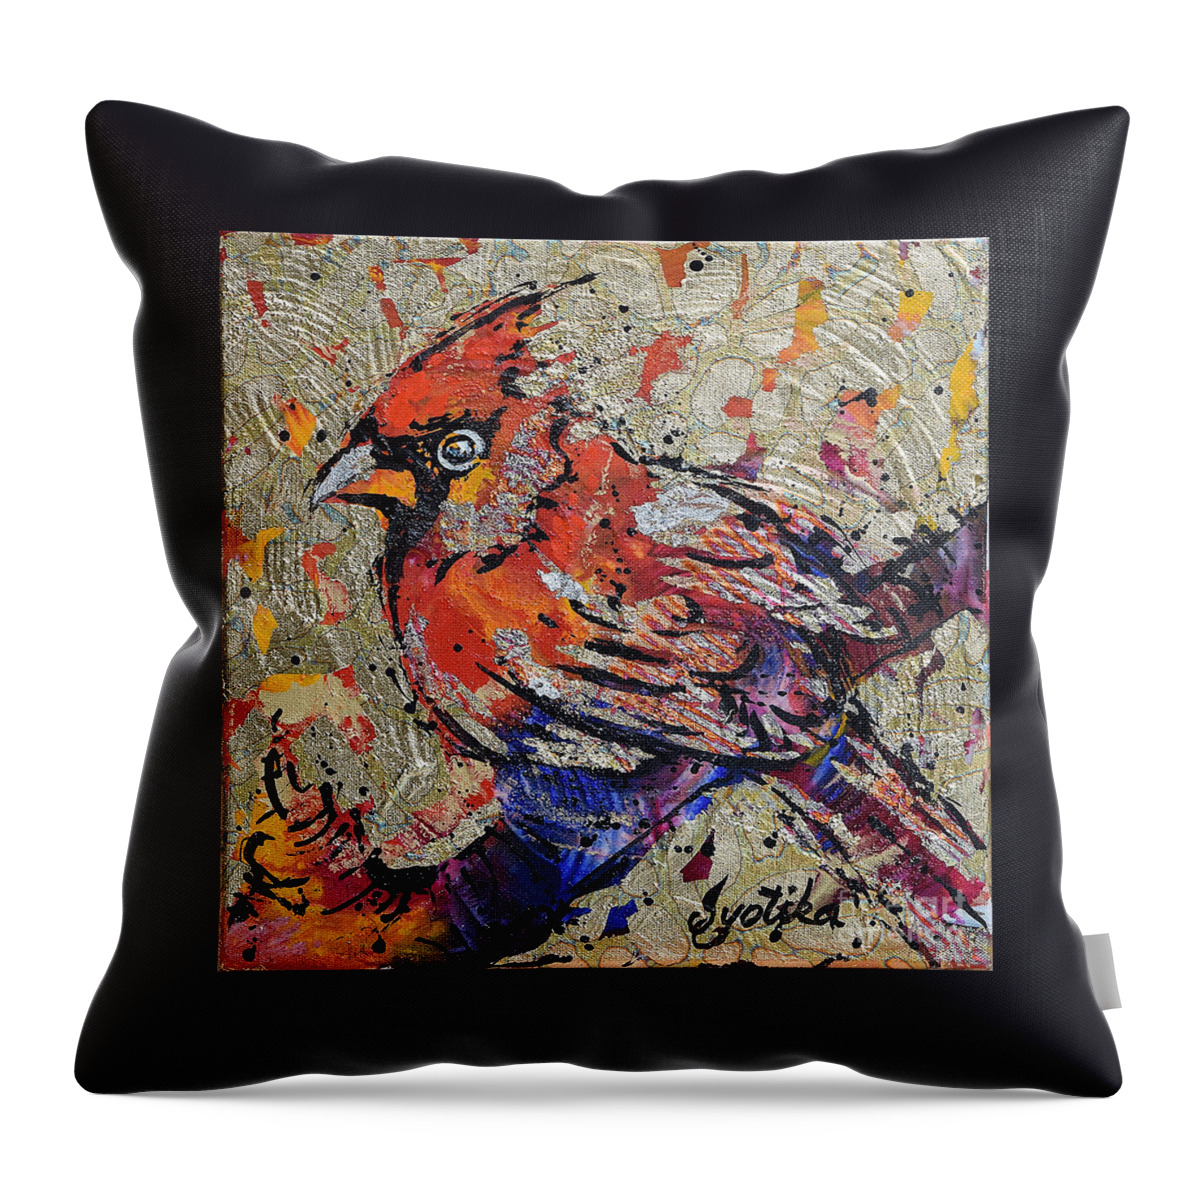 Cardinal Throw Pillow featuring the painting Cardinal by Jyotika Shroff